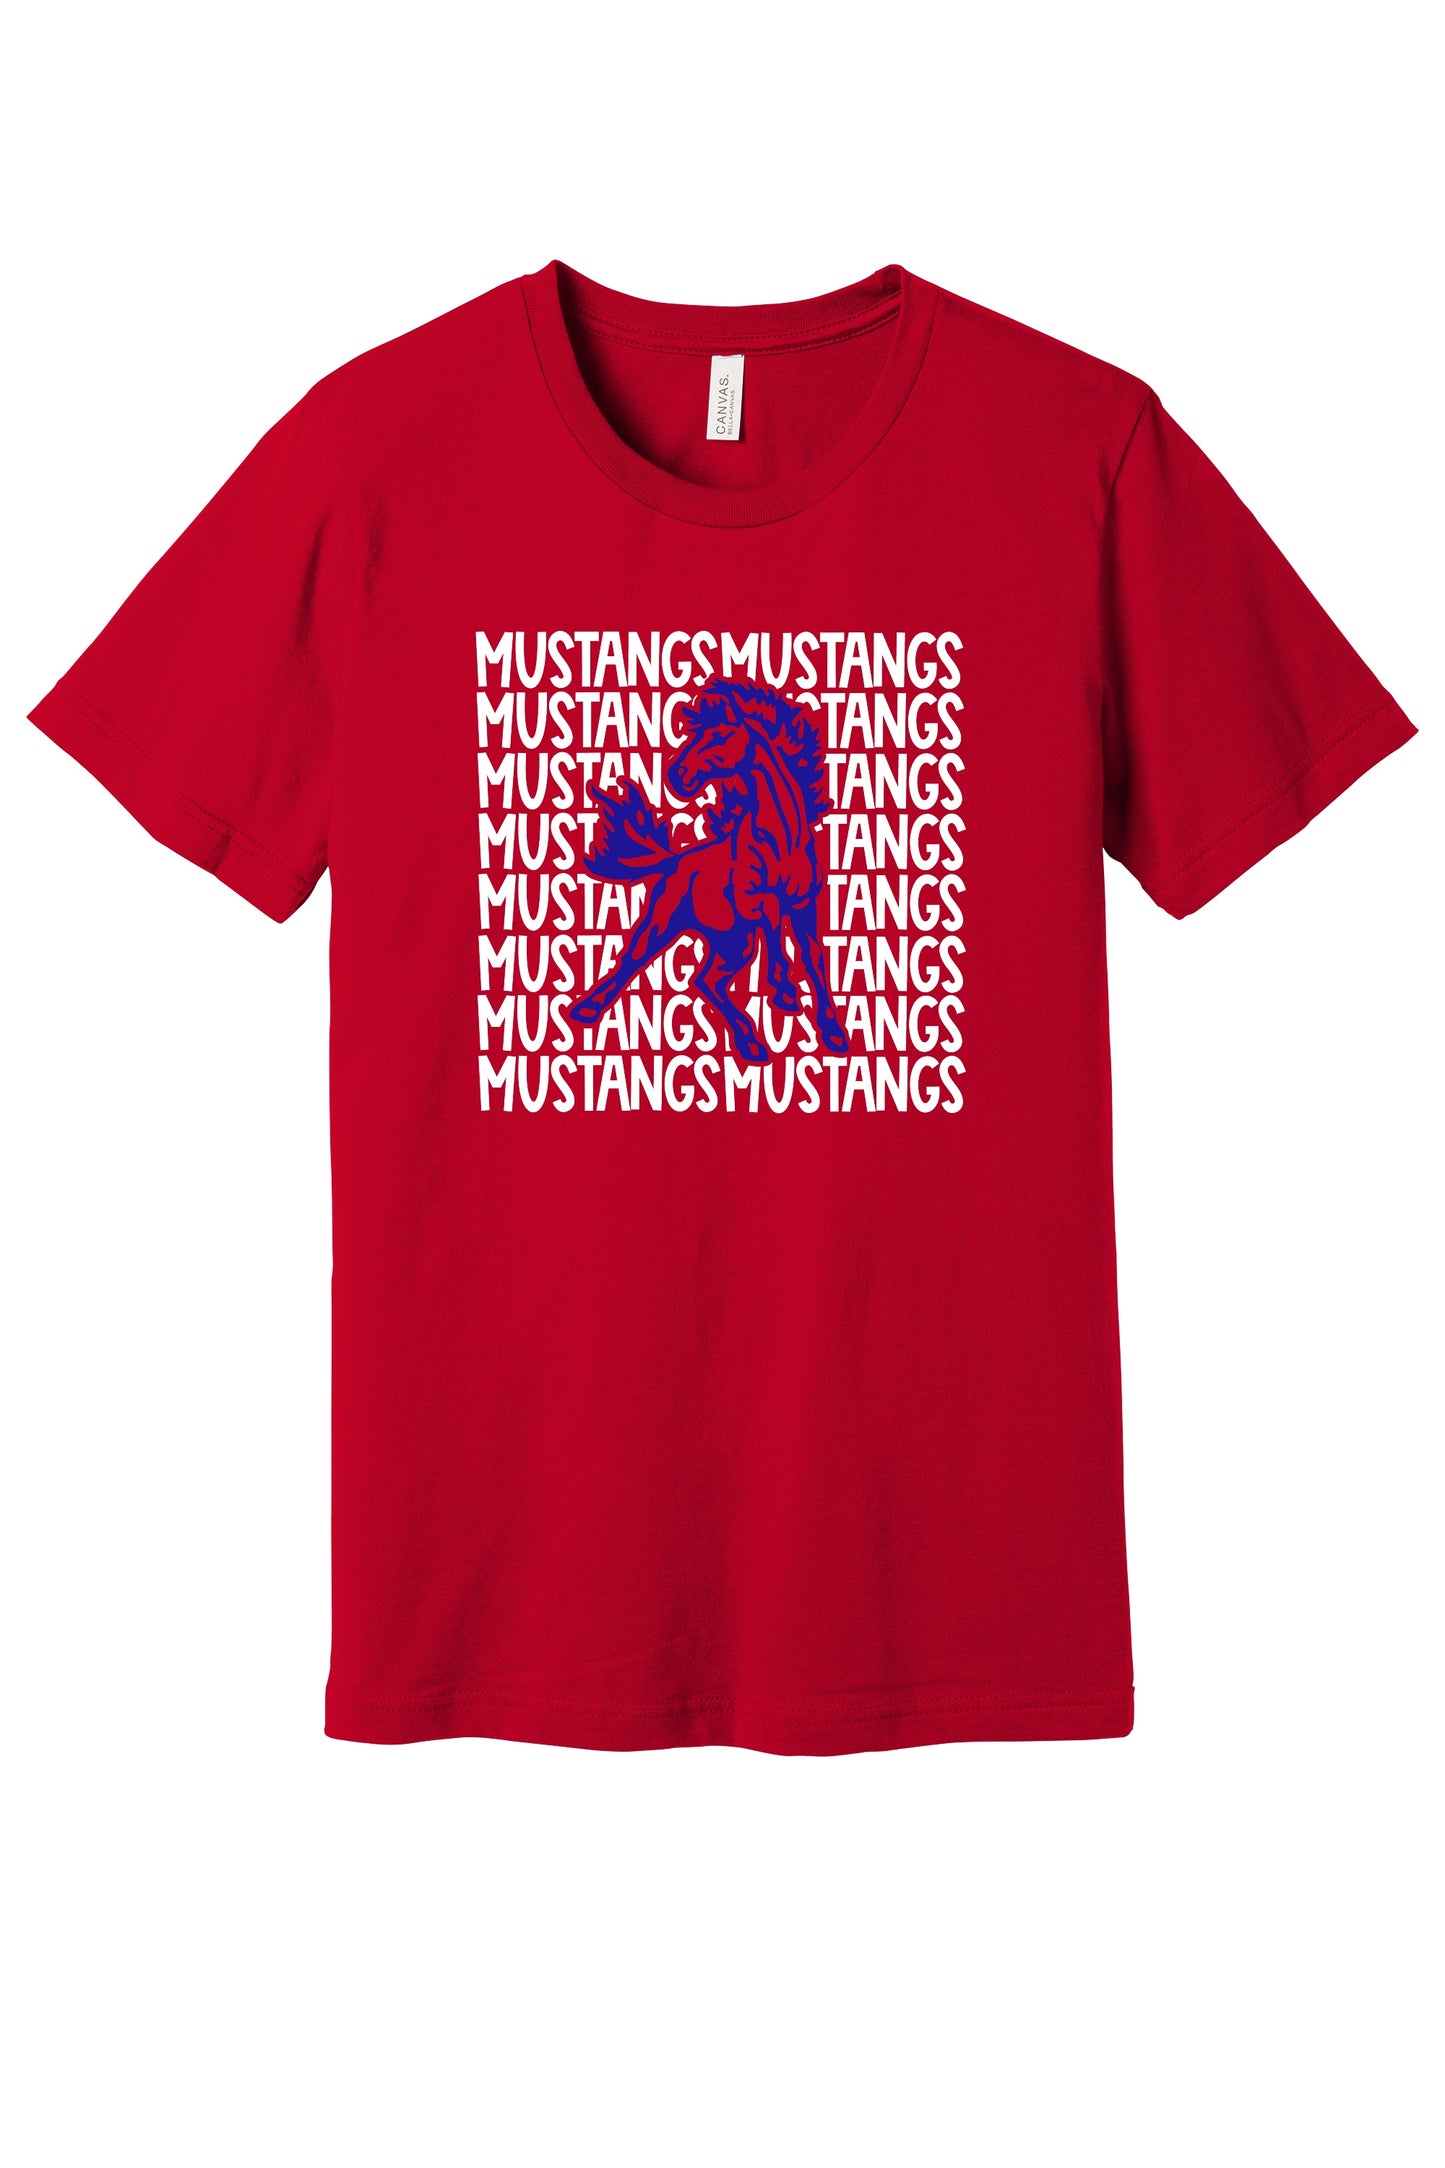 Grunge Mustangs T-shirt